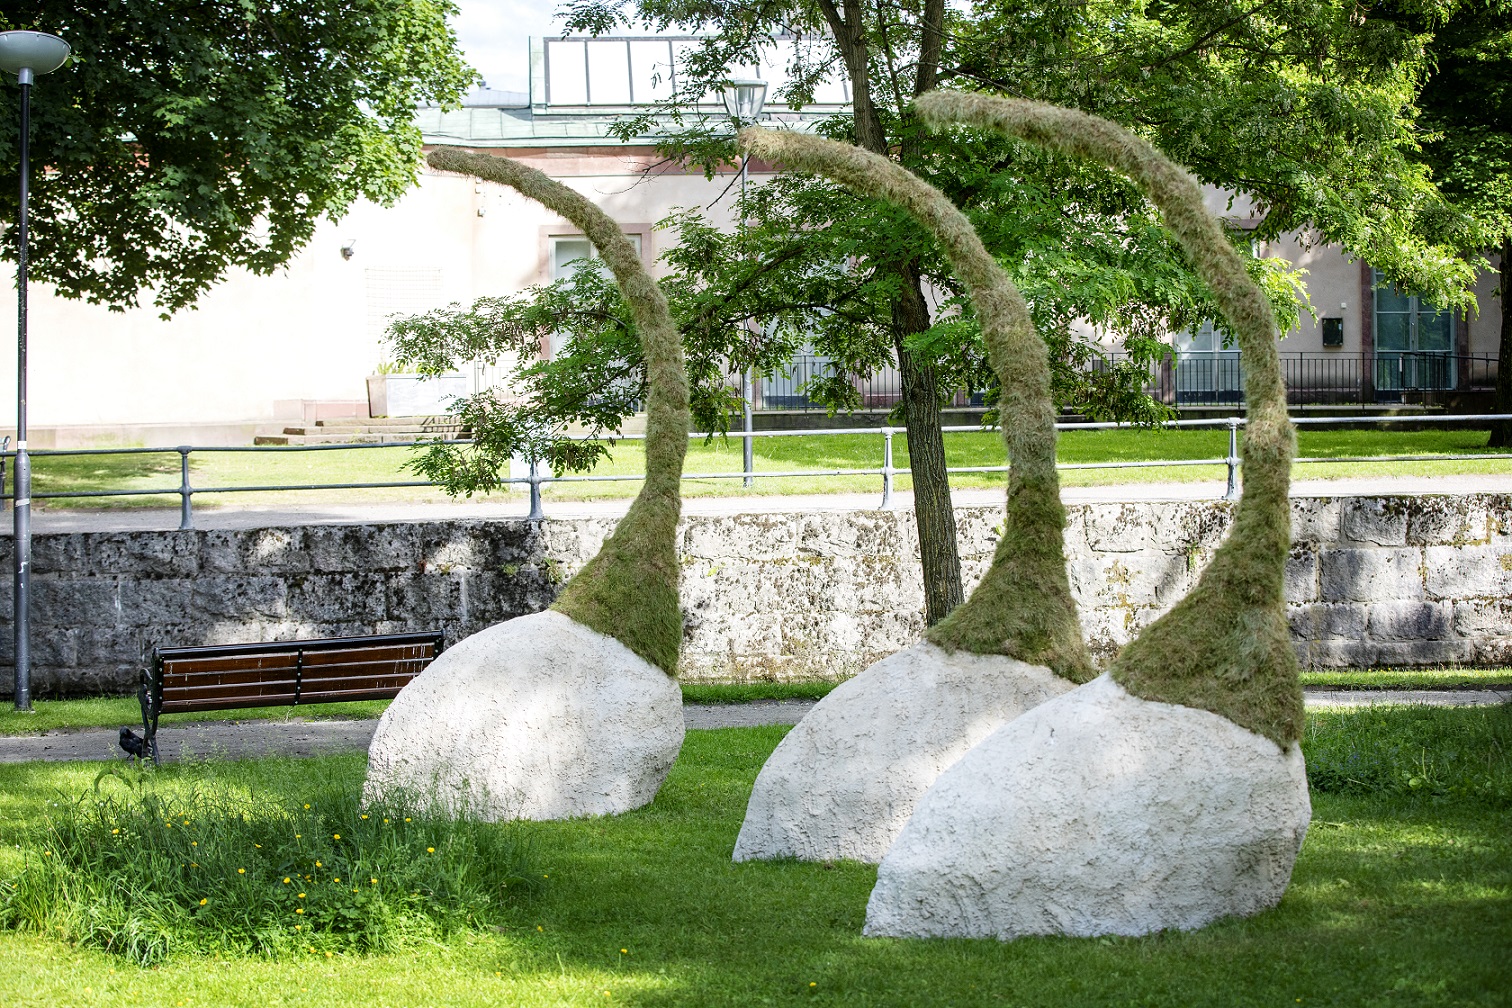 Tre konstverk på en gräsmatta. Underdelen består av en betong klump som sedan möter mossa som växer uppåt i en tomteluva liknande form. 